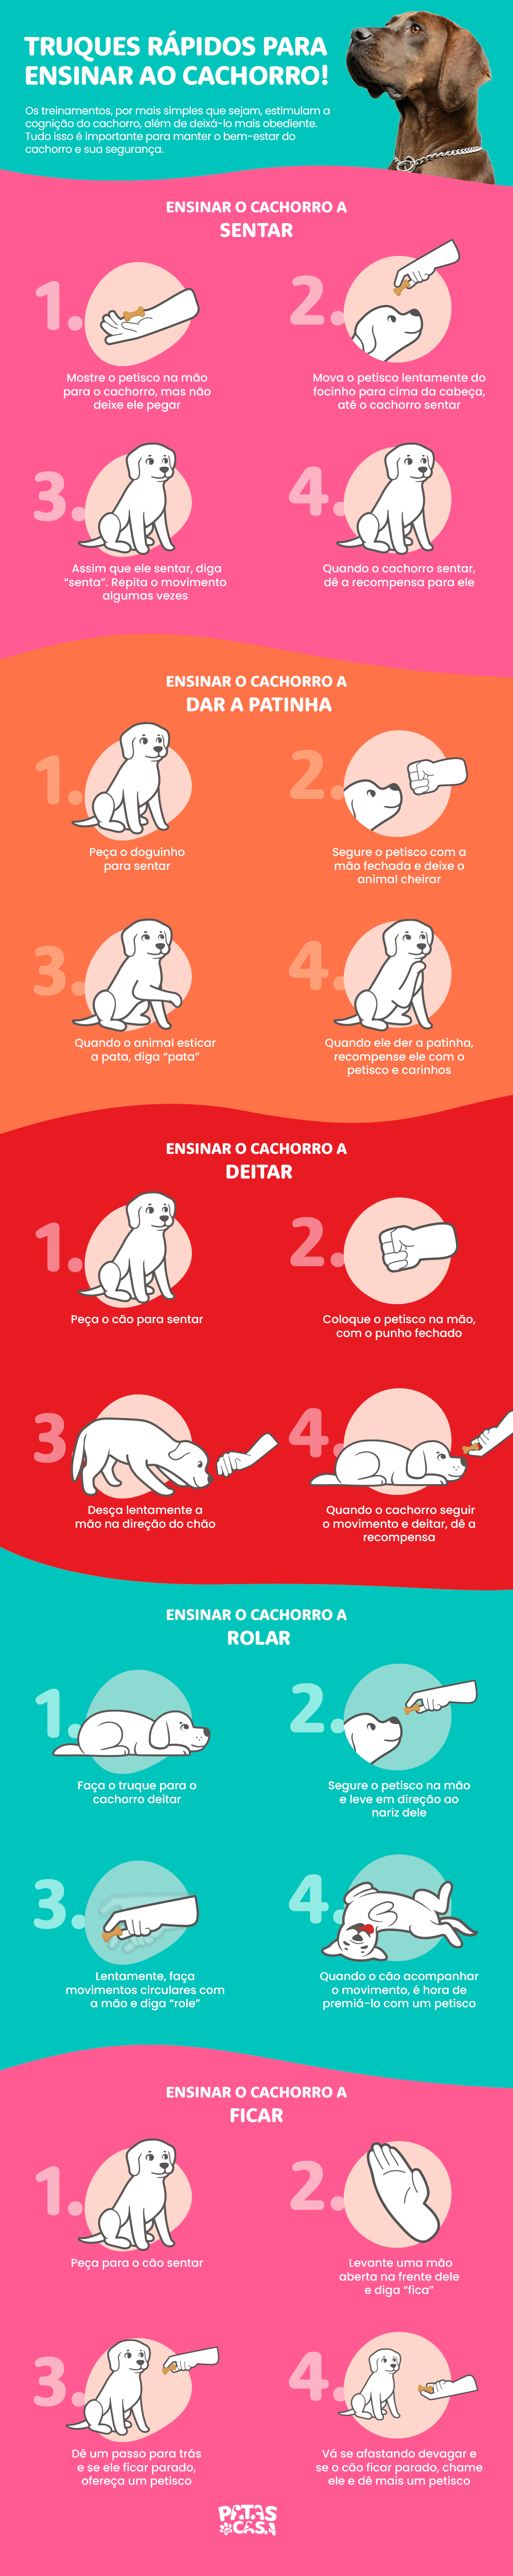 Bloco informativo mostrando como colocar em prática cinco truques para cachorro